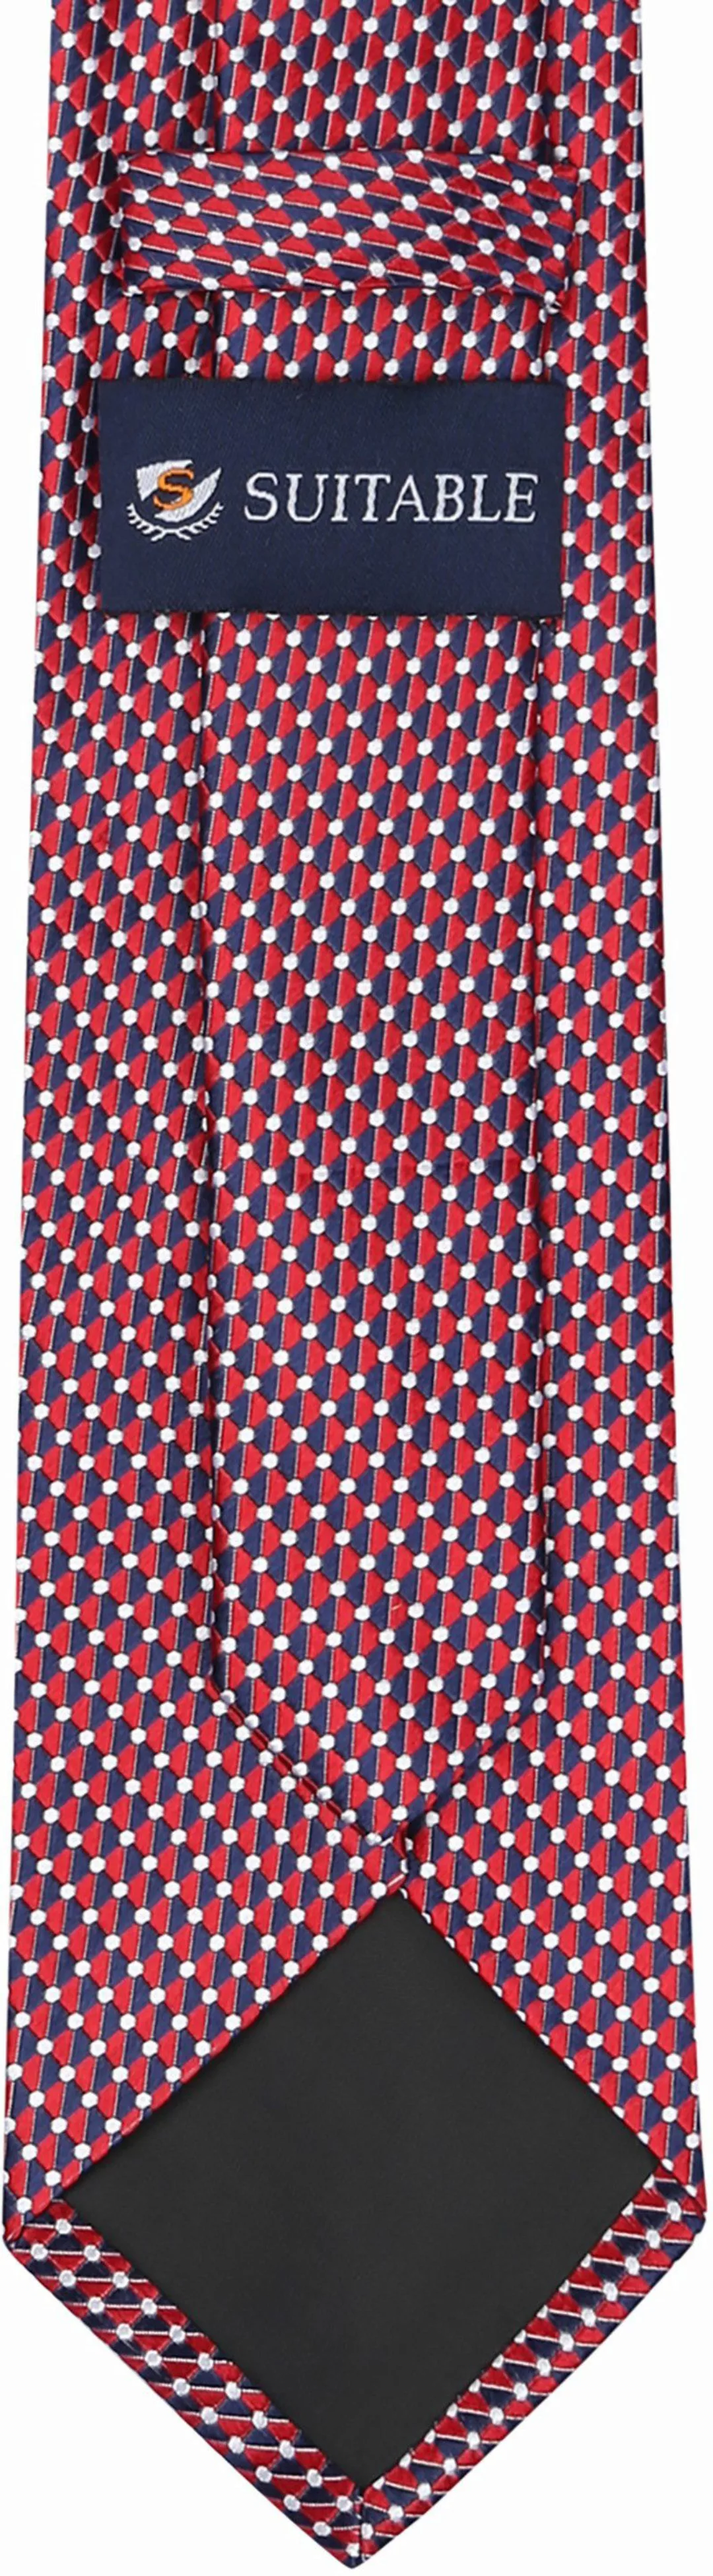 Suitable Krawatte Seide Druck Dots Rot - günstig online kaufen